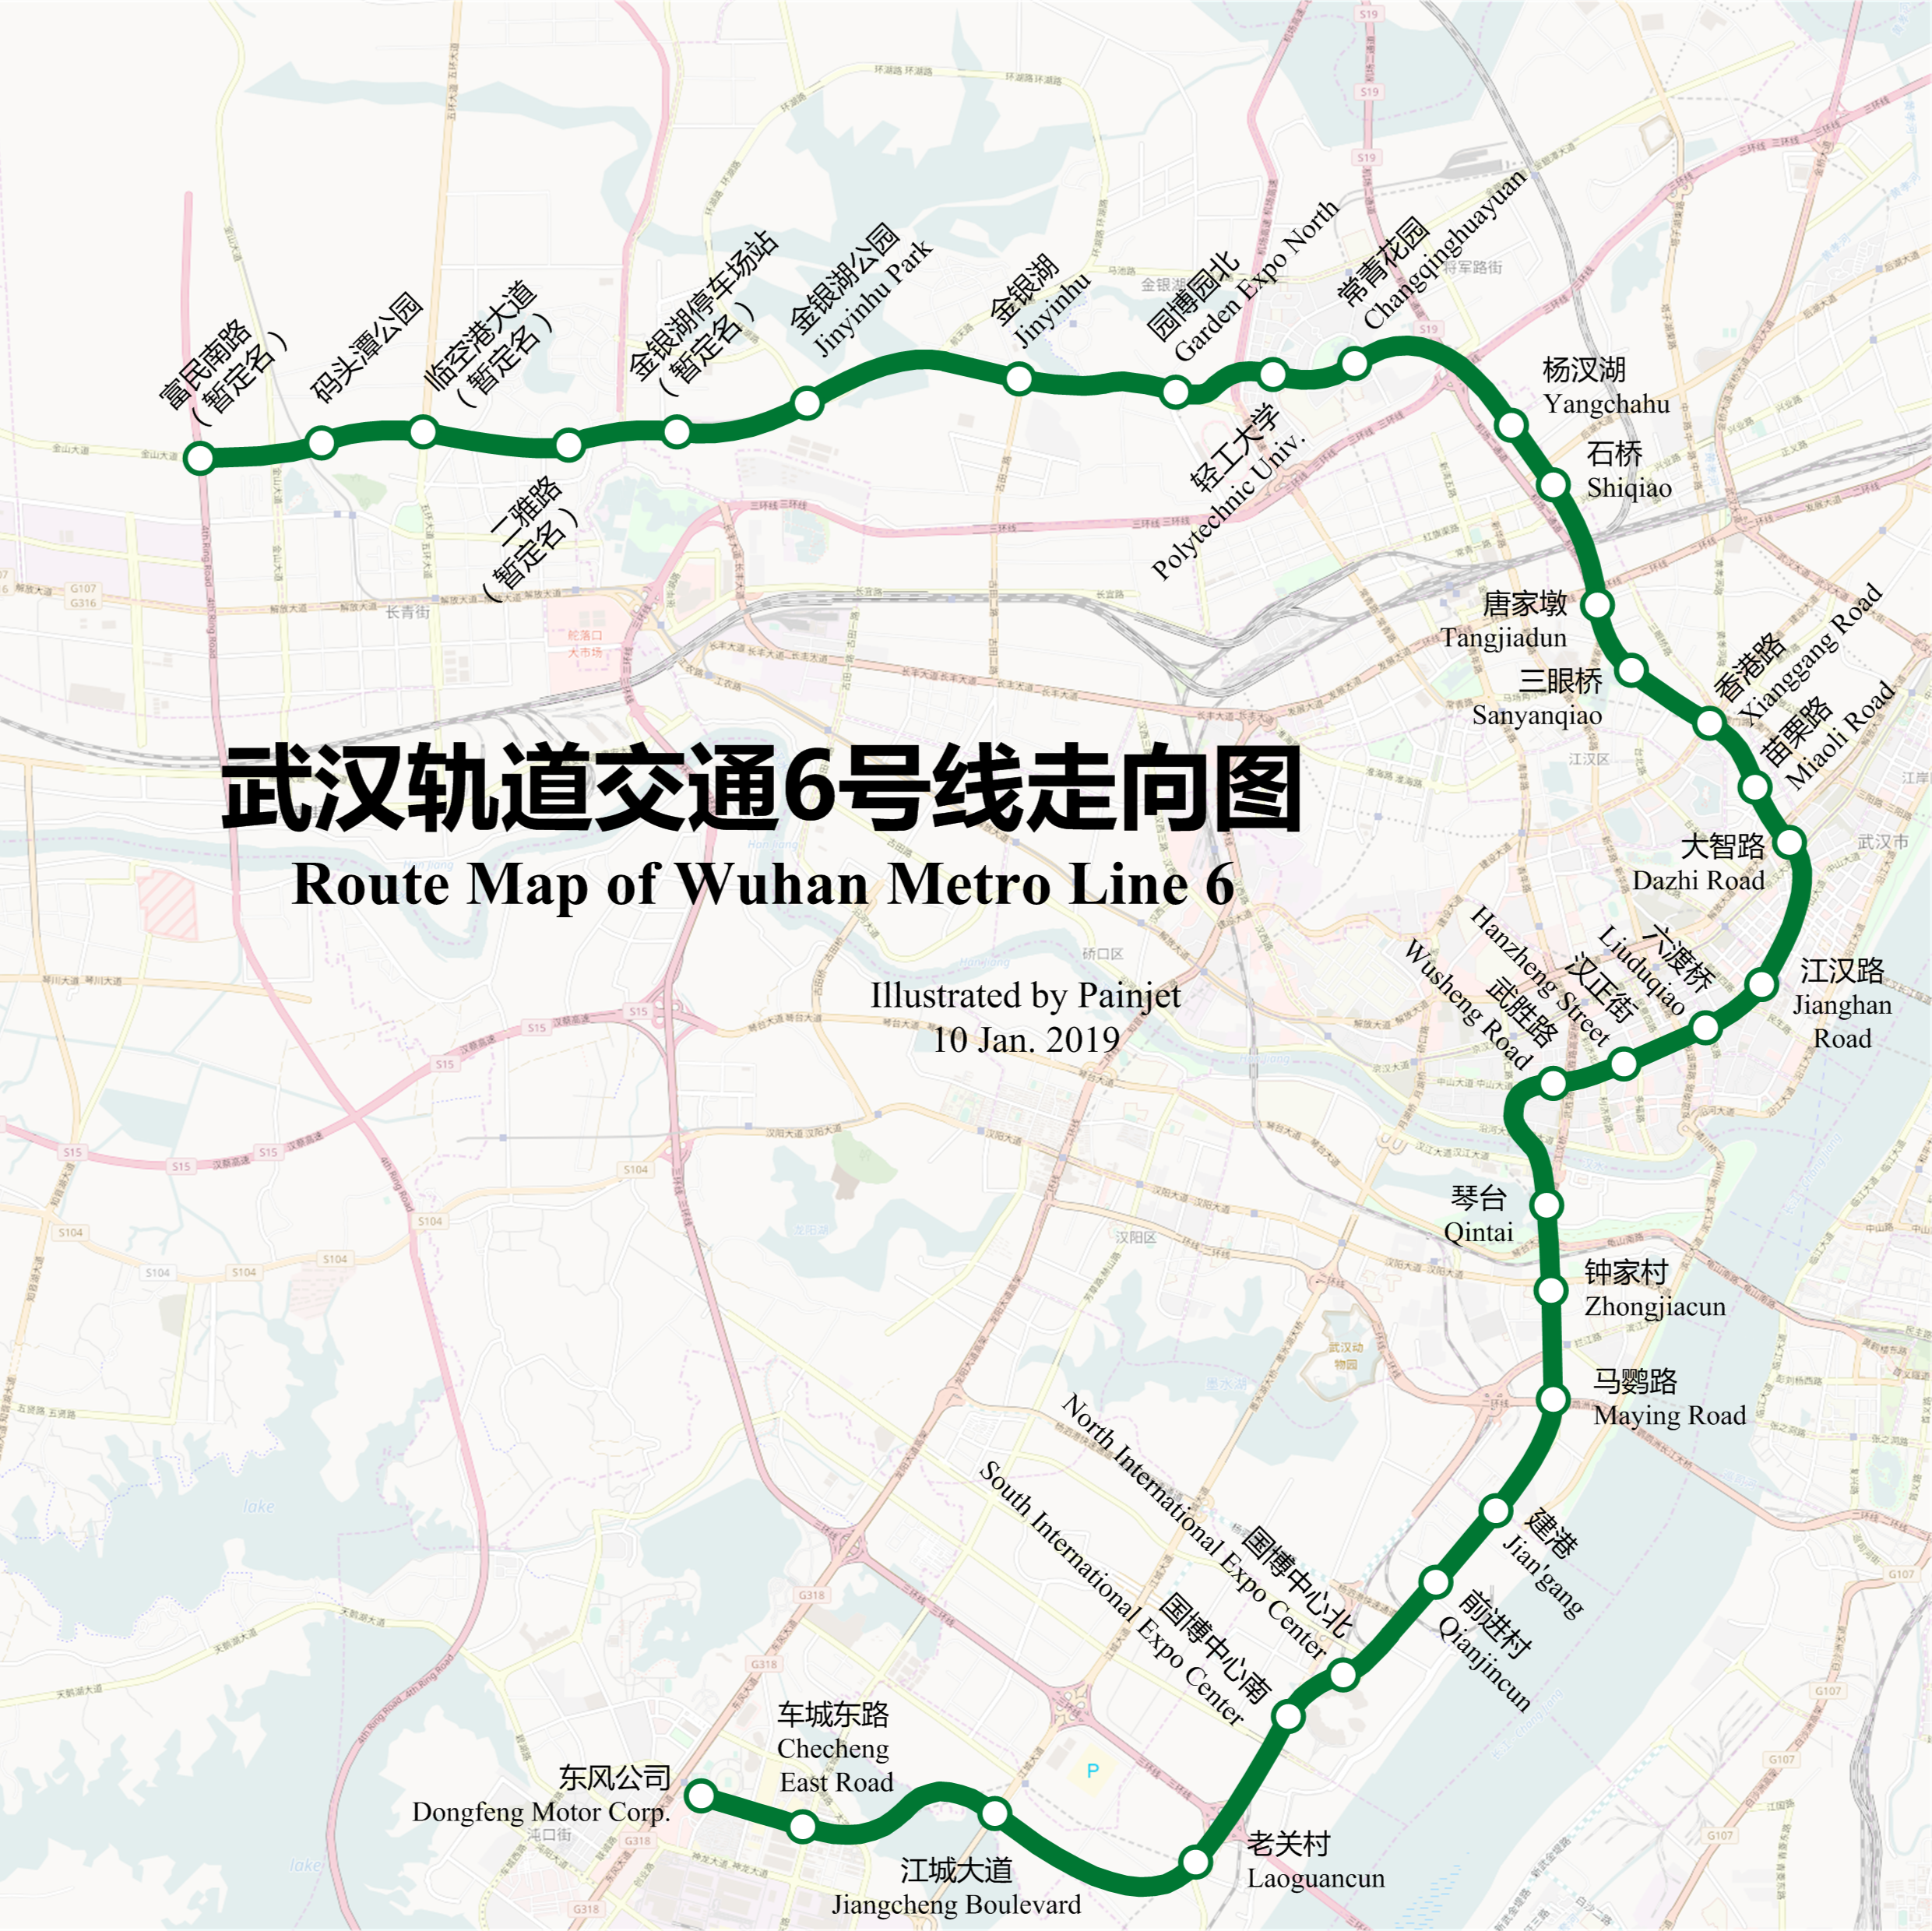 武汉轨道交通6号线经过6个行政区,成为最弯曲的一条轨道交通线路